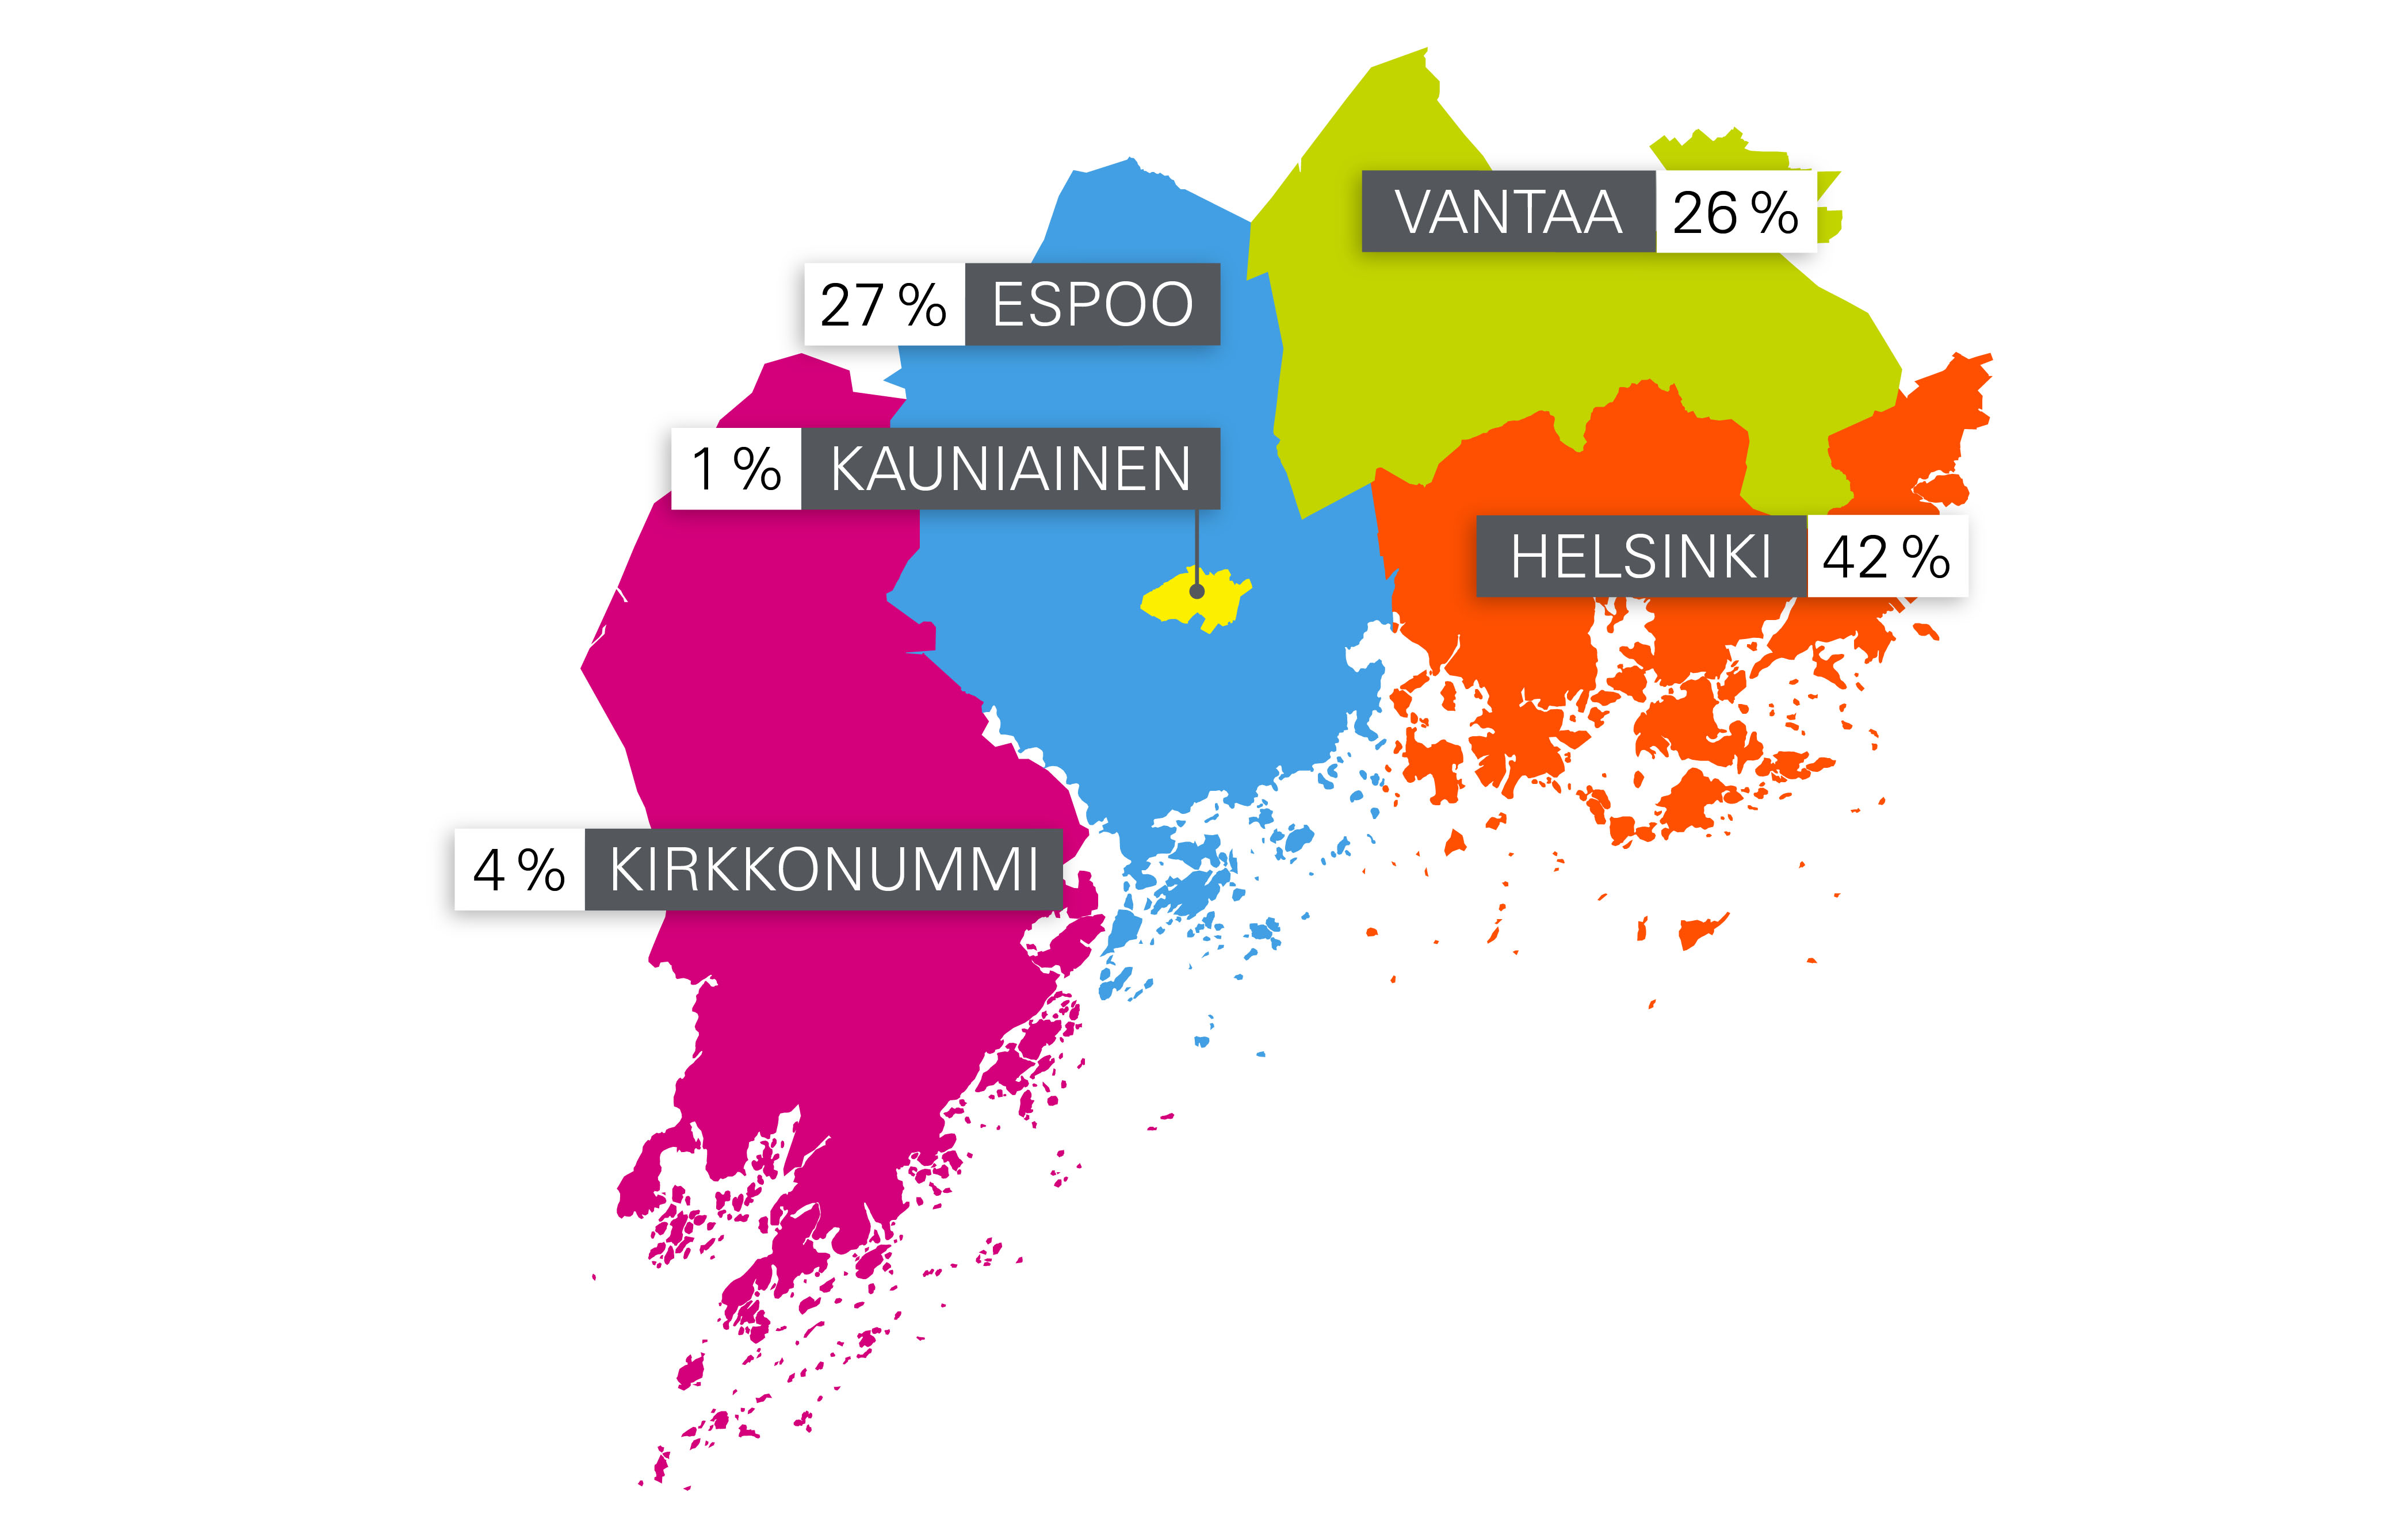 Omistajakunnat: Helsinki 42 %, Espoo 27 %, Vantaa 26 %, Kirkkonummi 4 % ja Kauniainen 1 % 